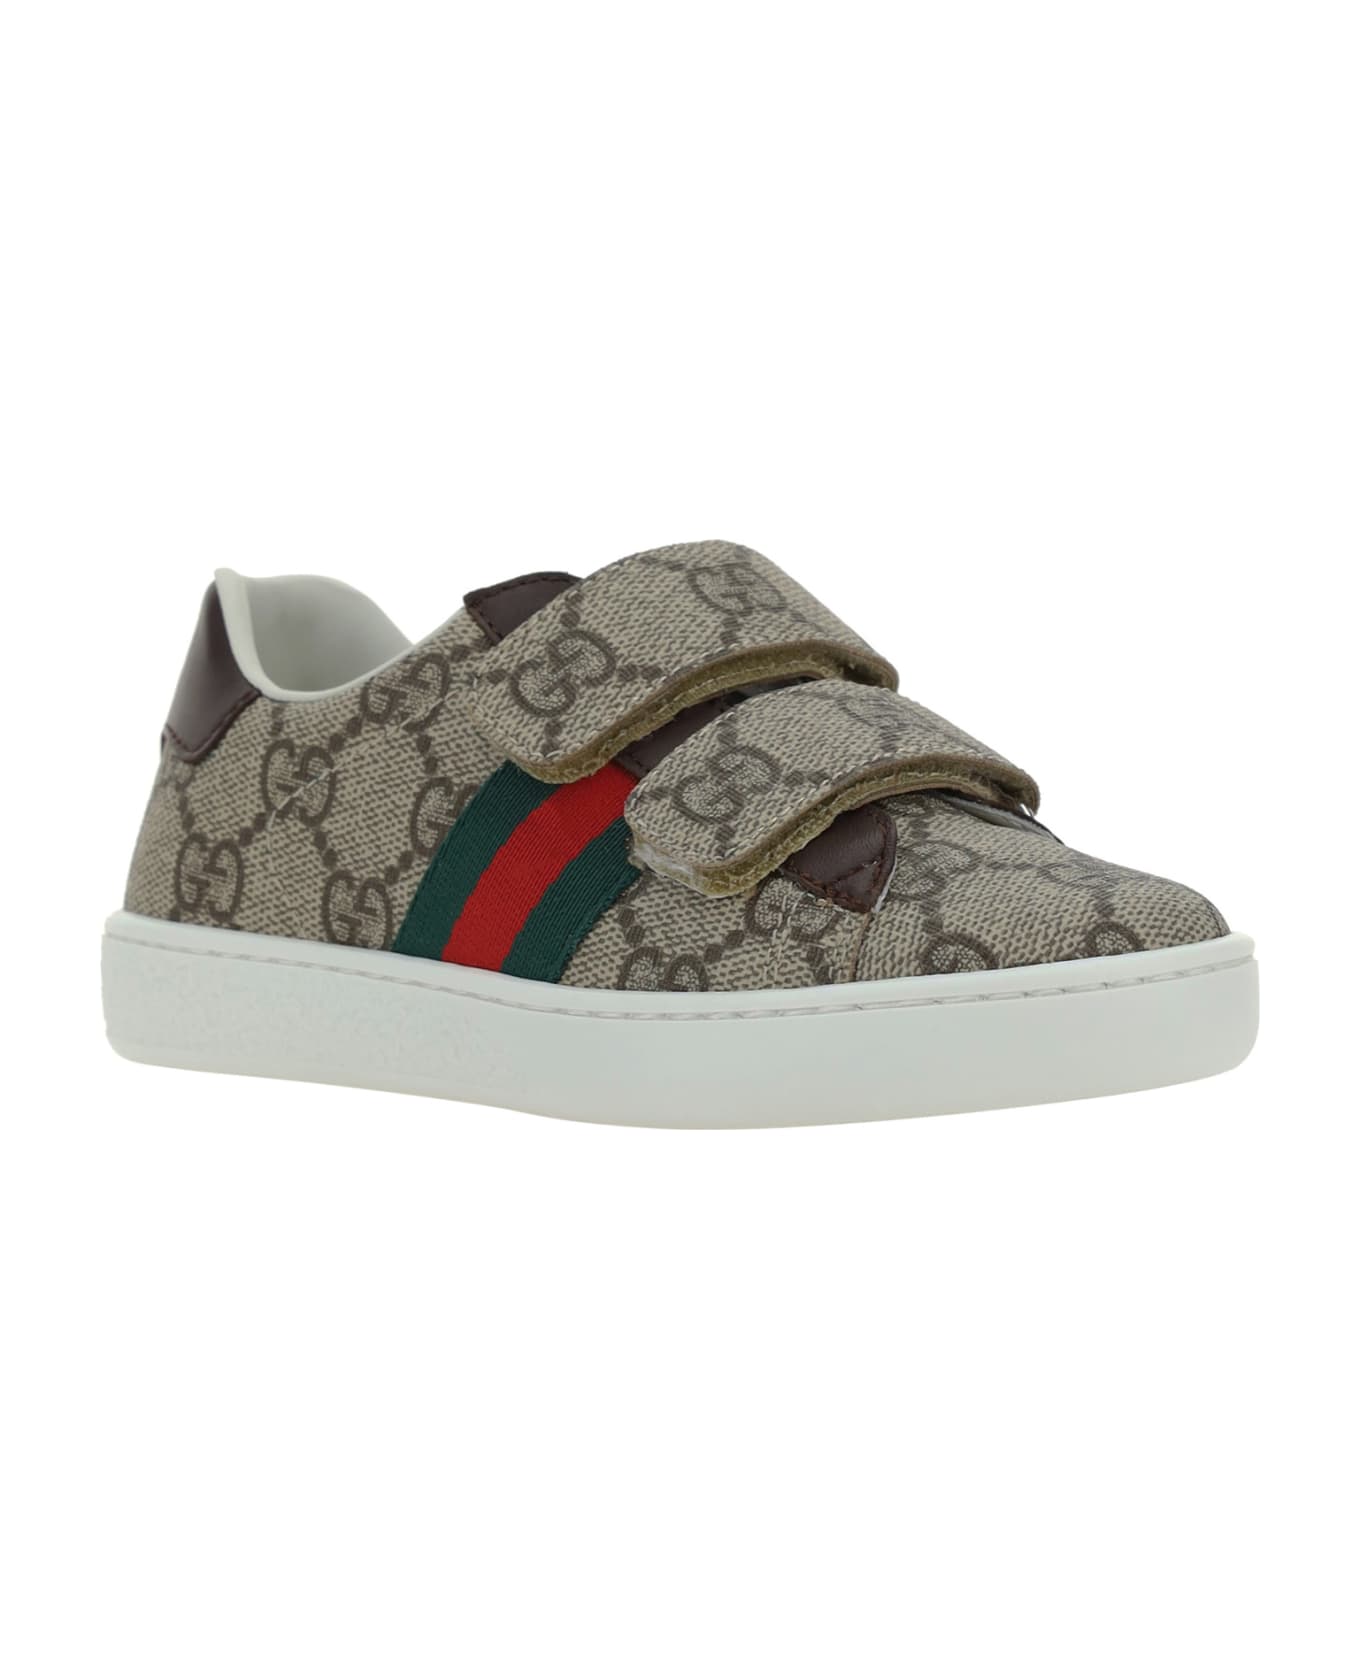 Gucci Sneakers For Boy - MultiColour シューズ